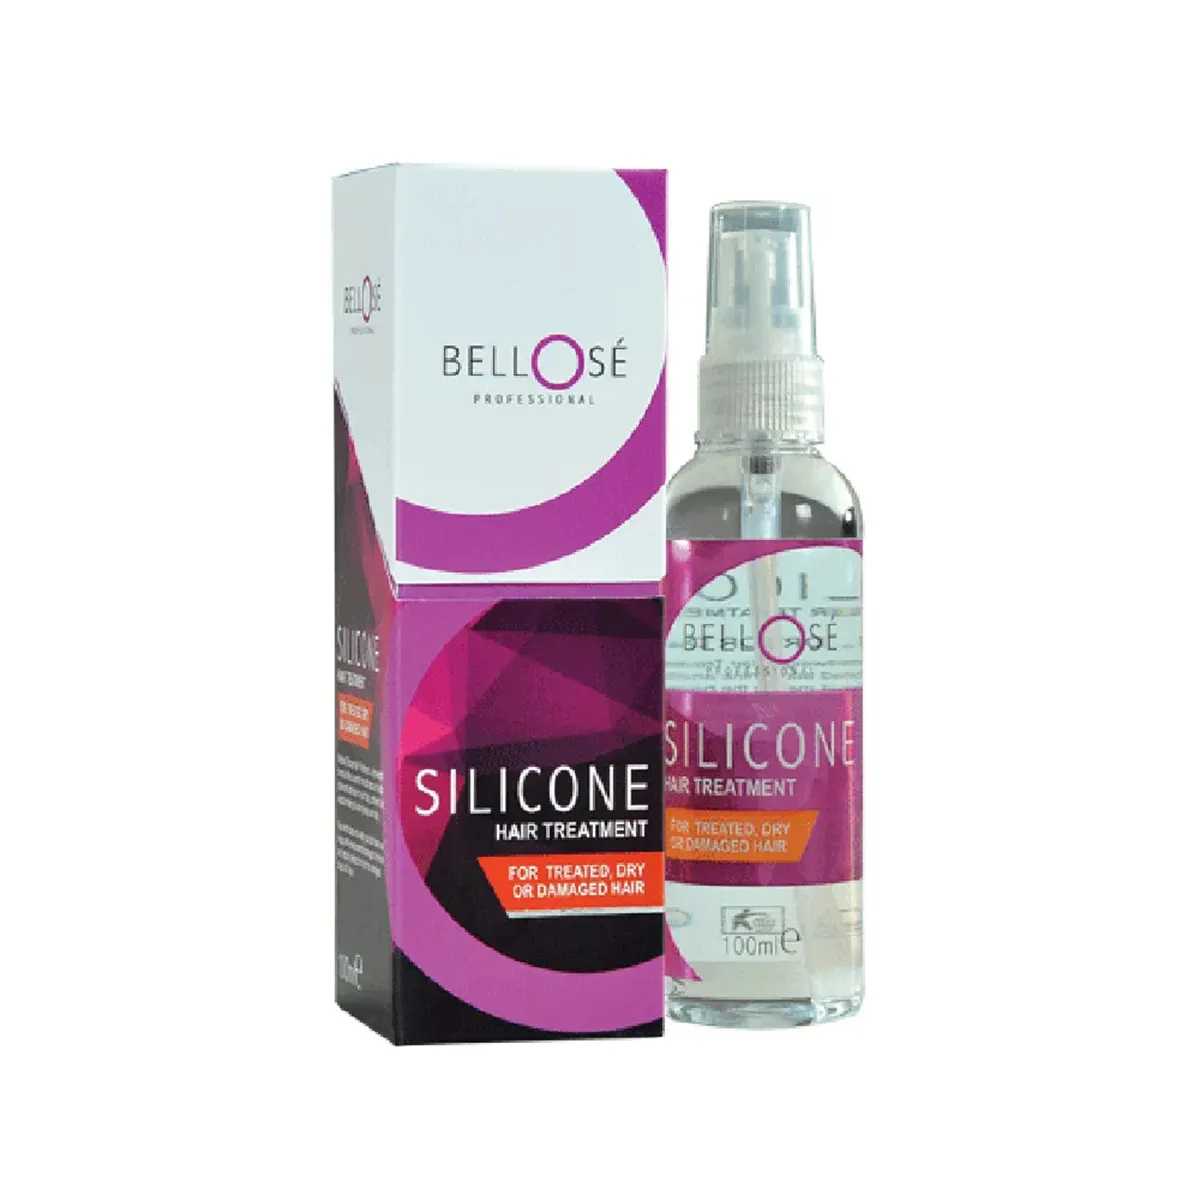 Bellose Silicone Hair Treatment 100ml